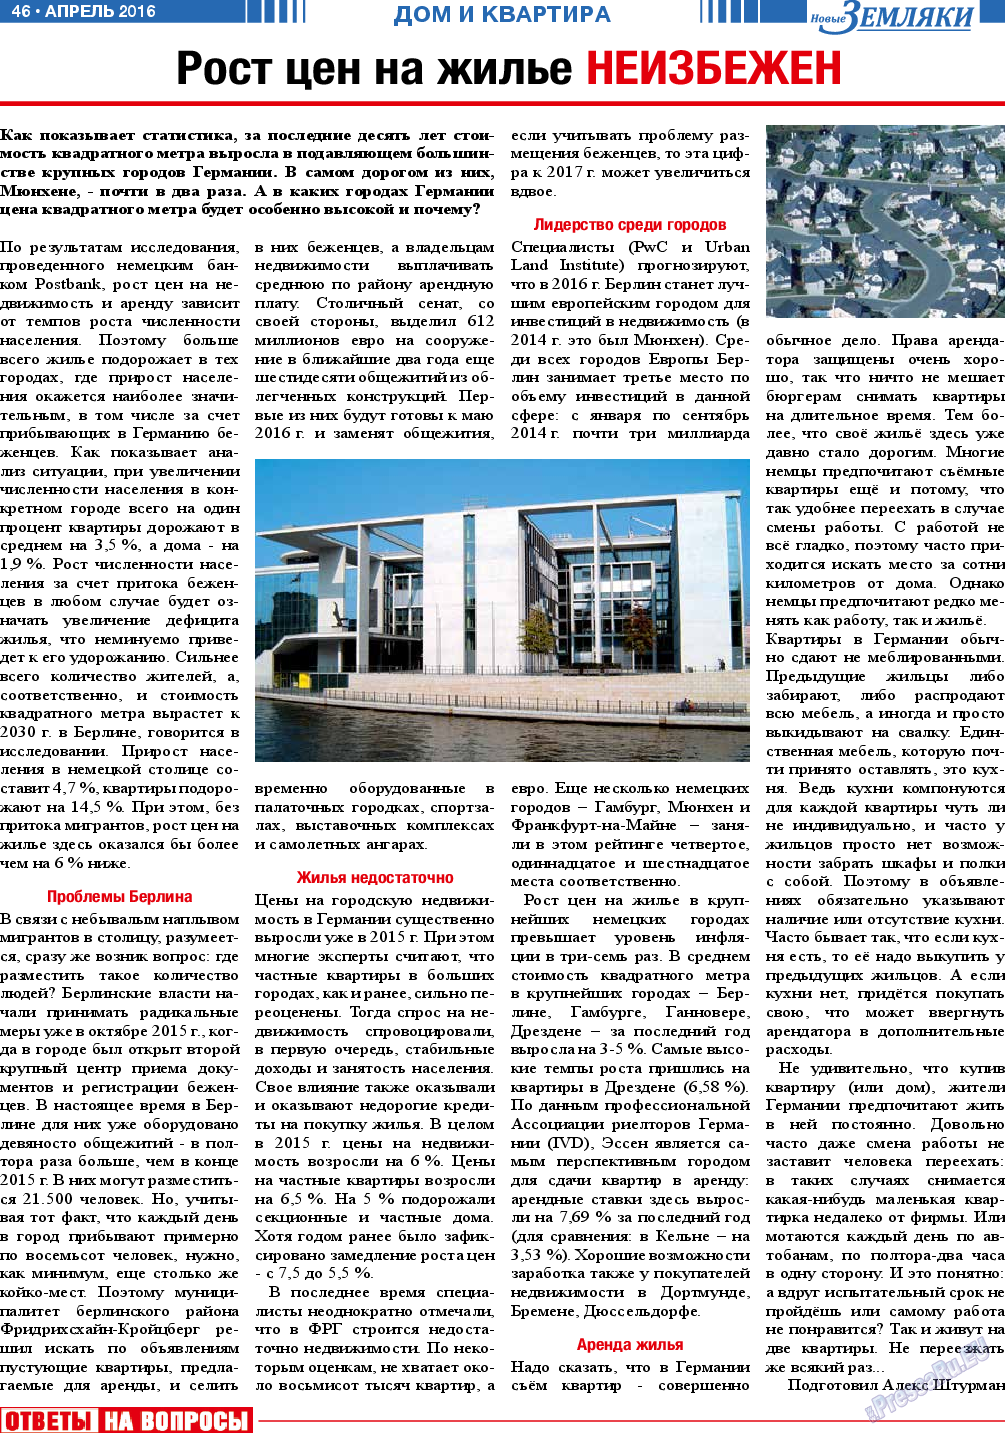 Новые Земляки (газета). 2016 год, номер 4, стр. 46